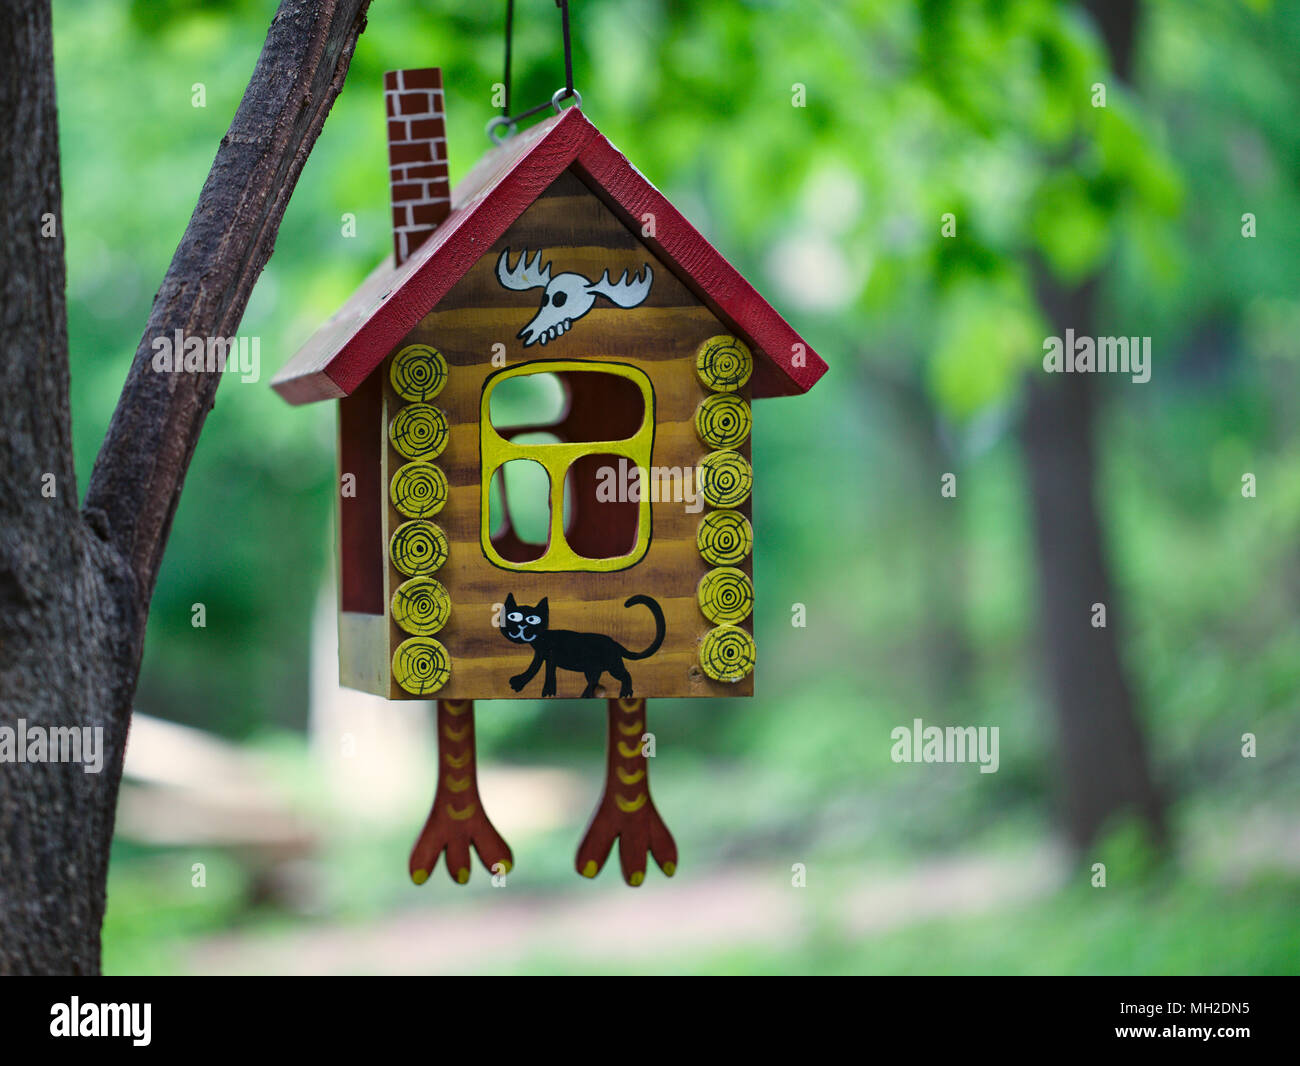 Holz- zuführung für Vögel im Sommer. Vogelhaus aus Holz im Garten gemacht  Stockfotografie - Alamy